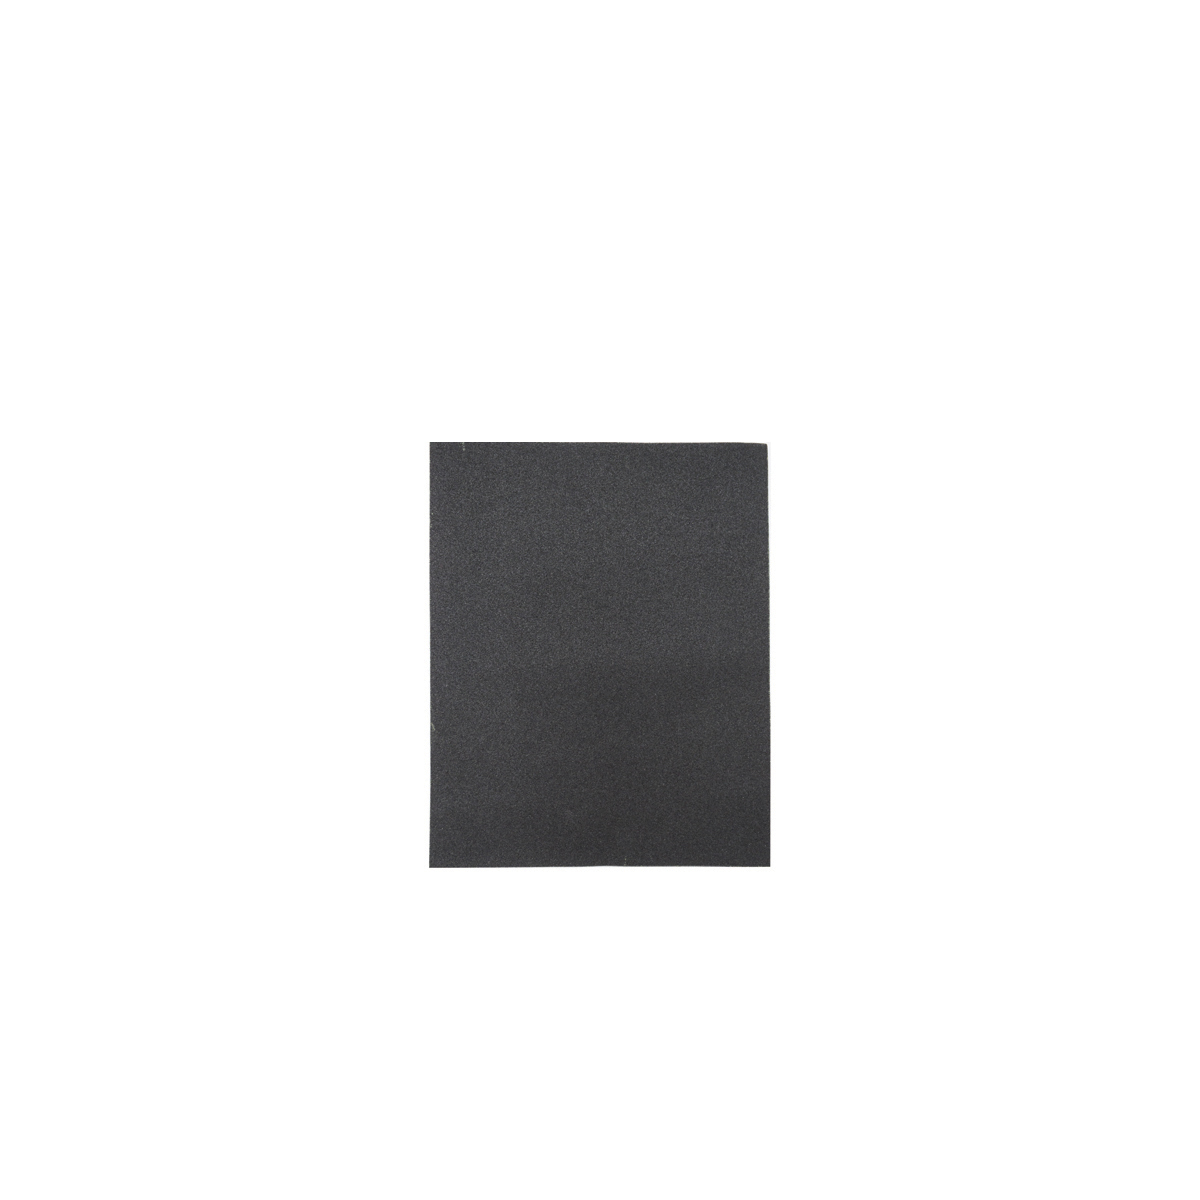 Лист шлифовальный Кедр, P 1500, 230 x 280 мм, водостойкий,   бумага, 10 шт водостойкий универсальный шлифовальный лист зубр